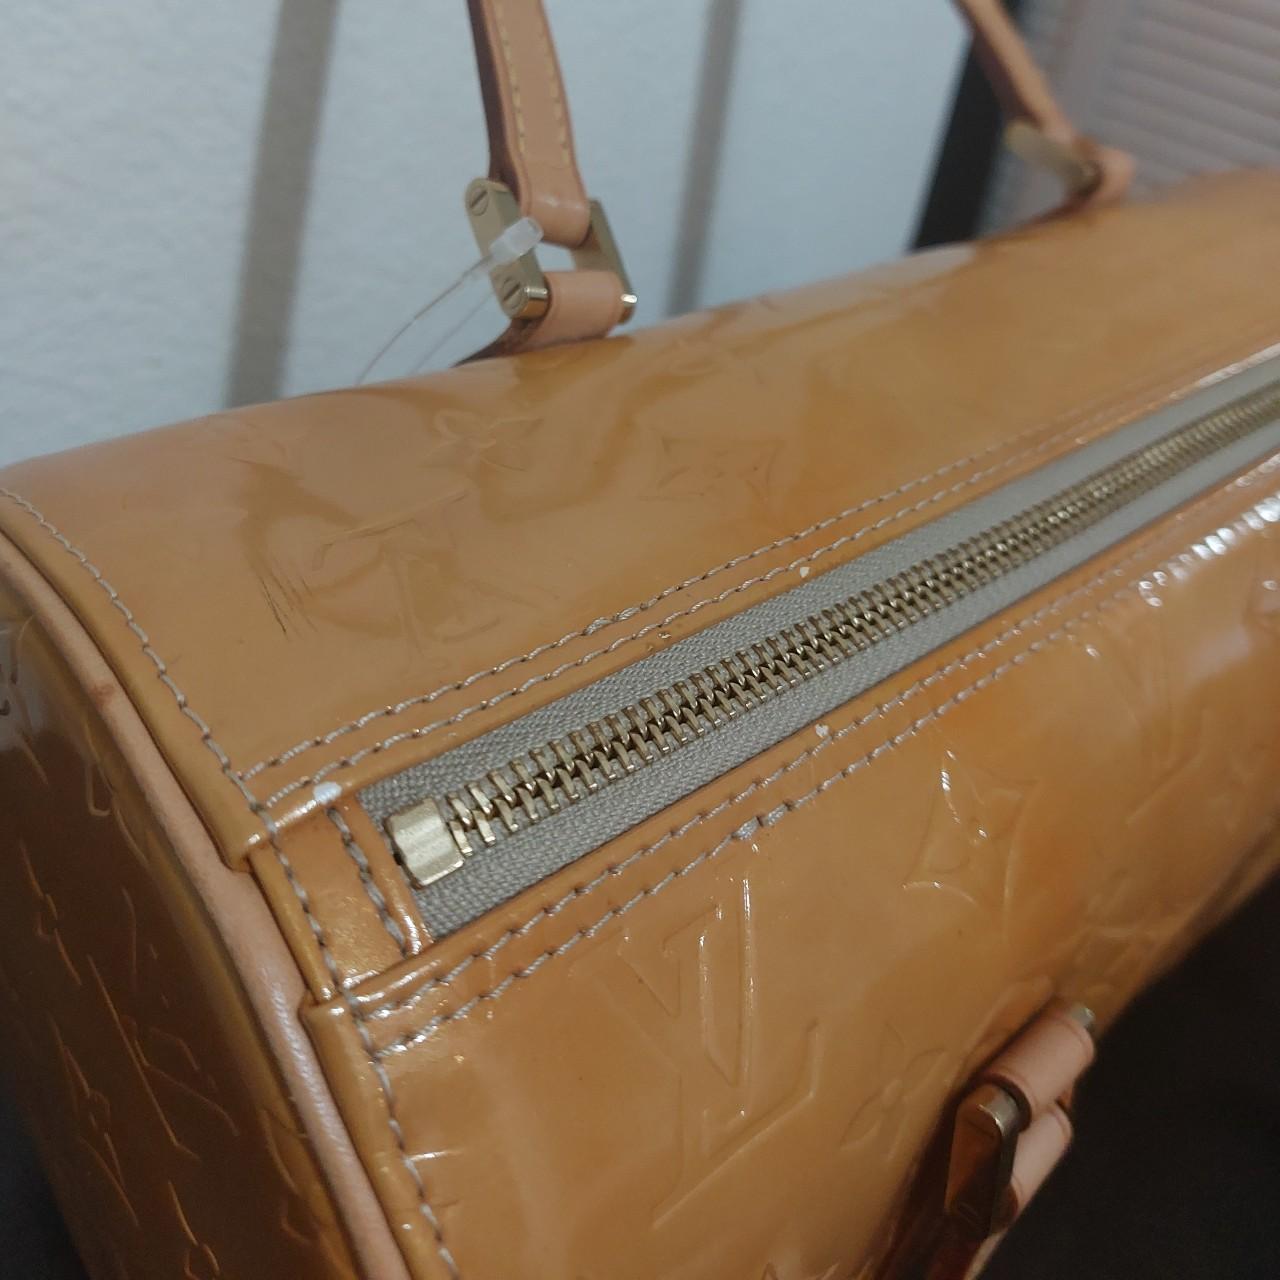 Late 90's authentic Louis Vuitton Epi Papillon bag - Depop